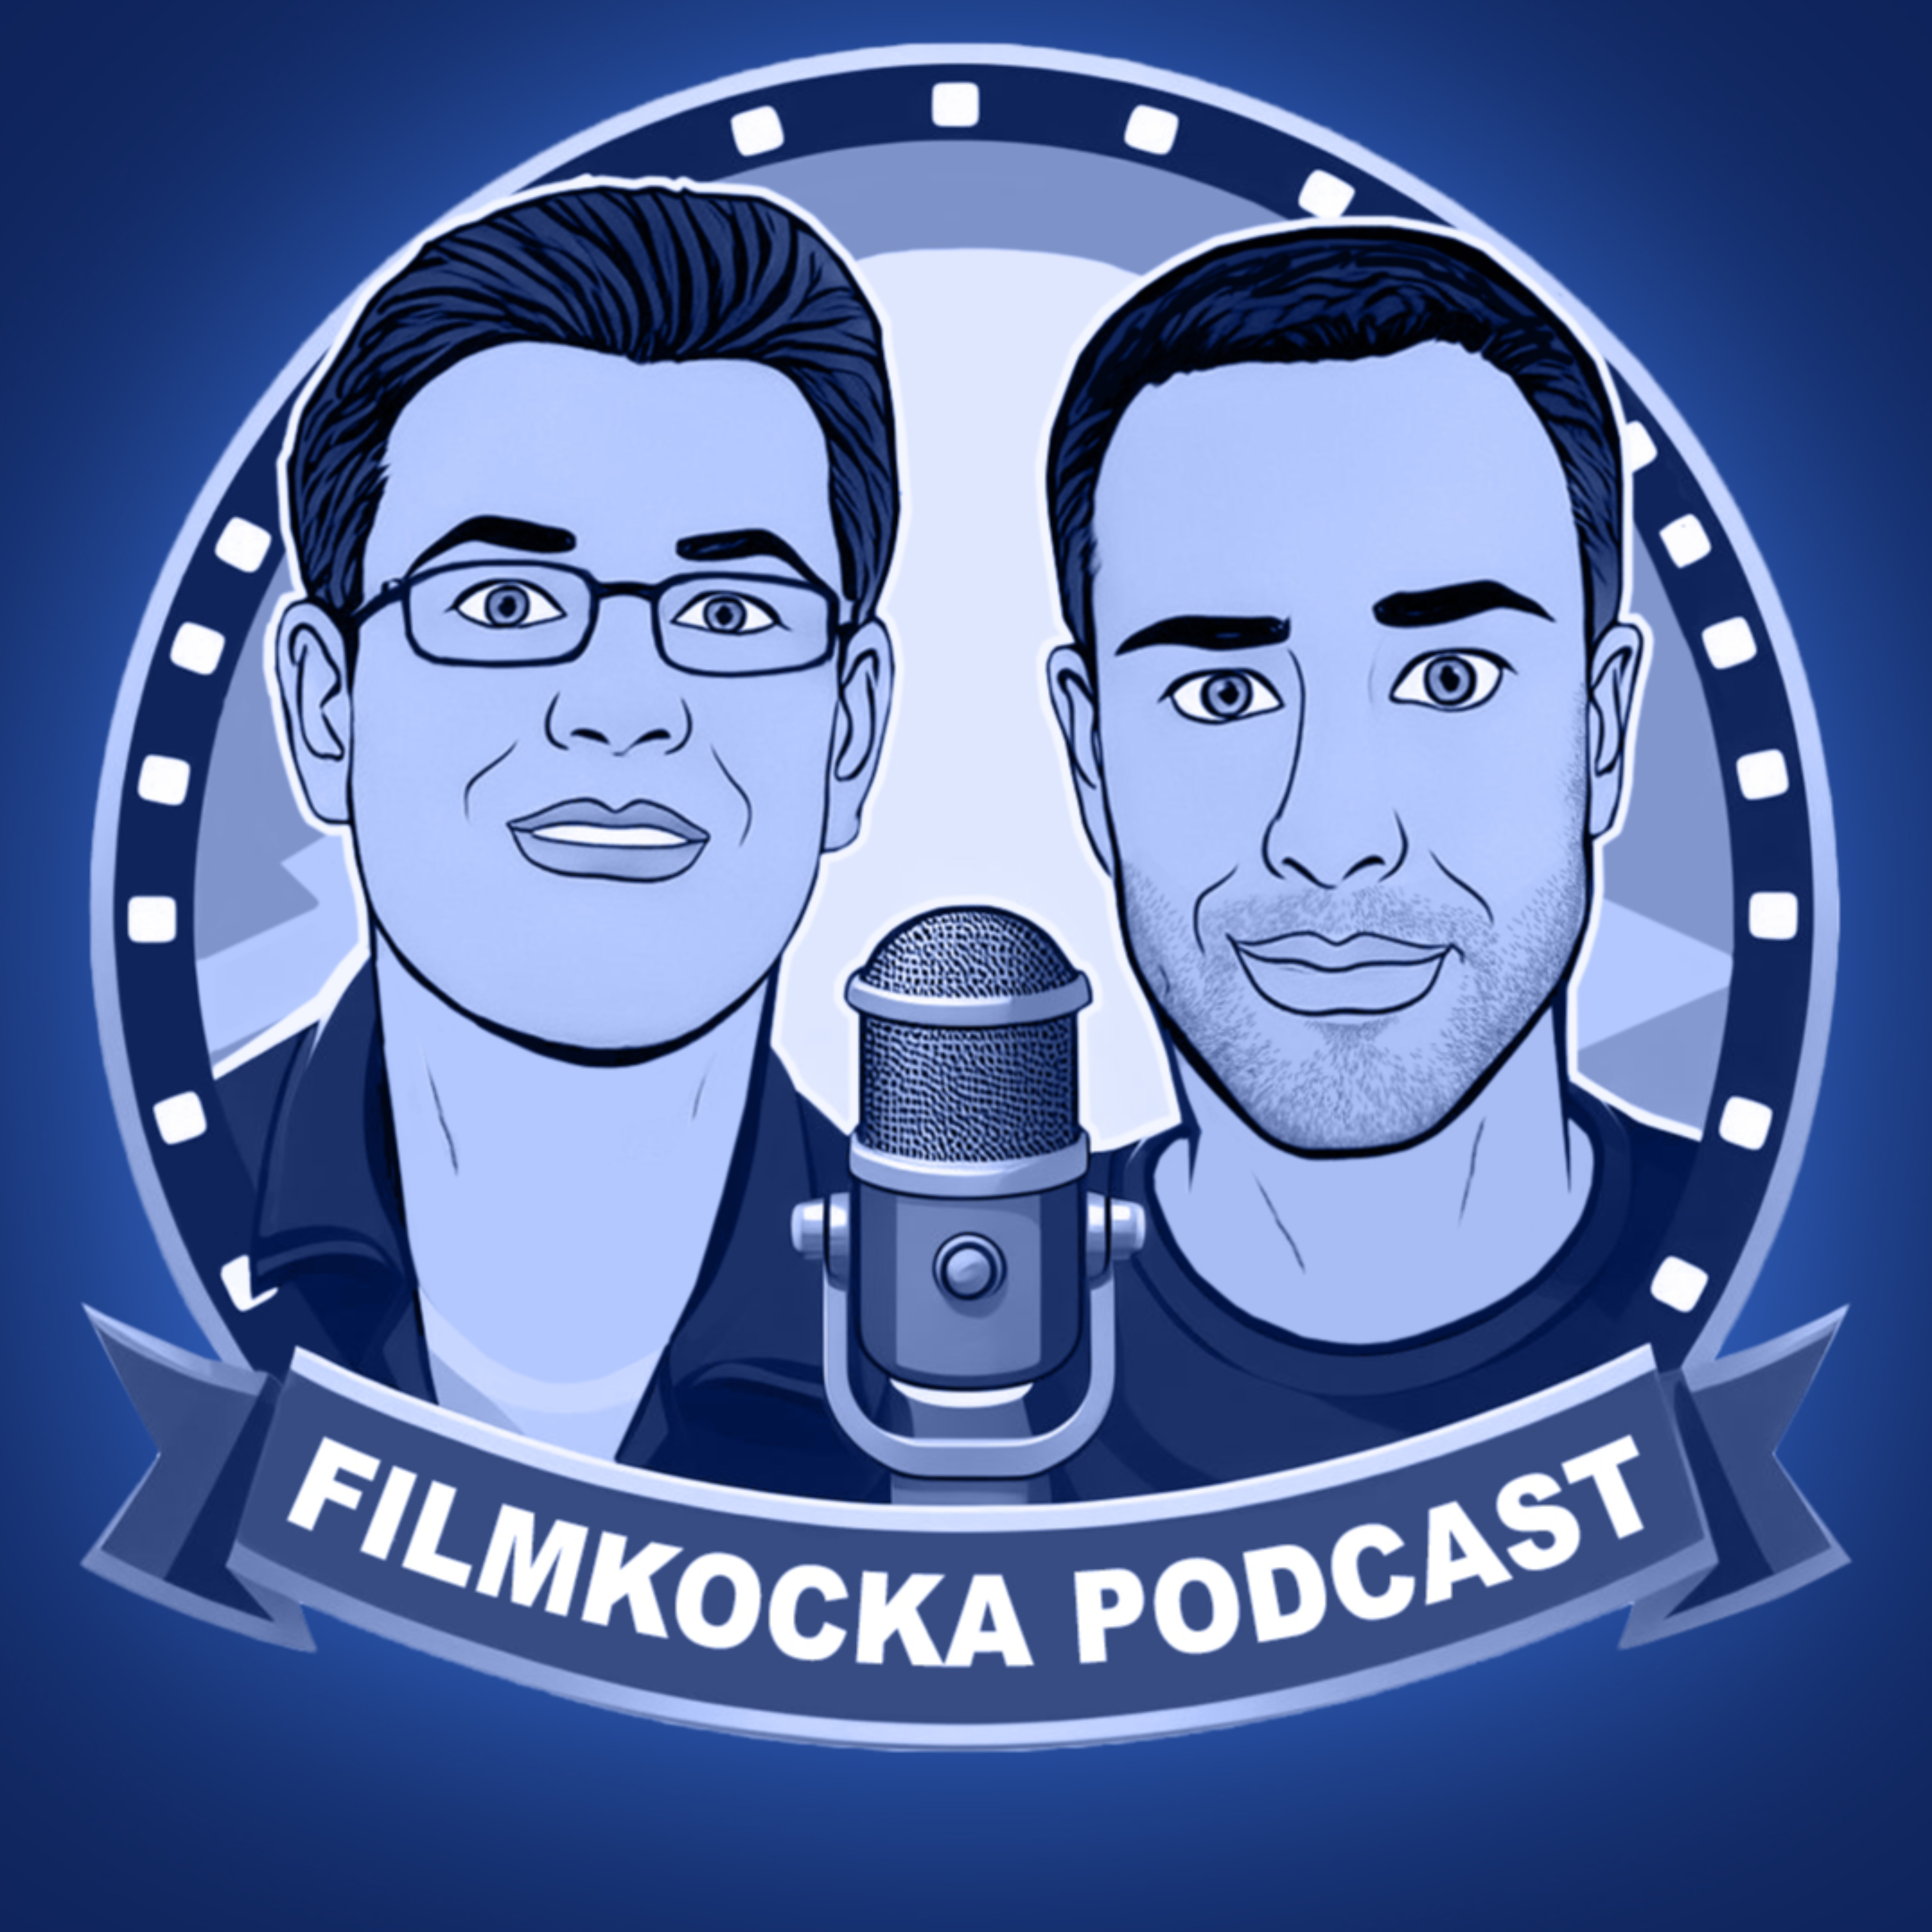 Filmkocka podcast